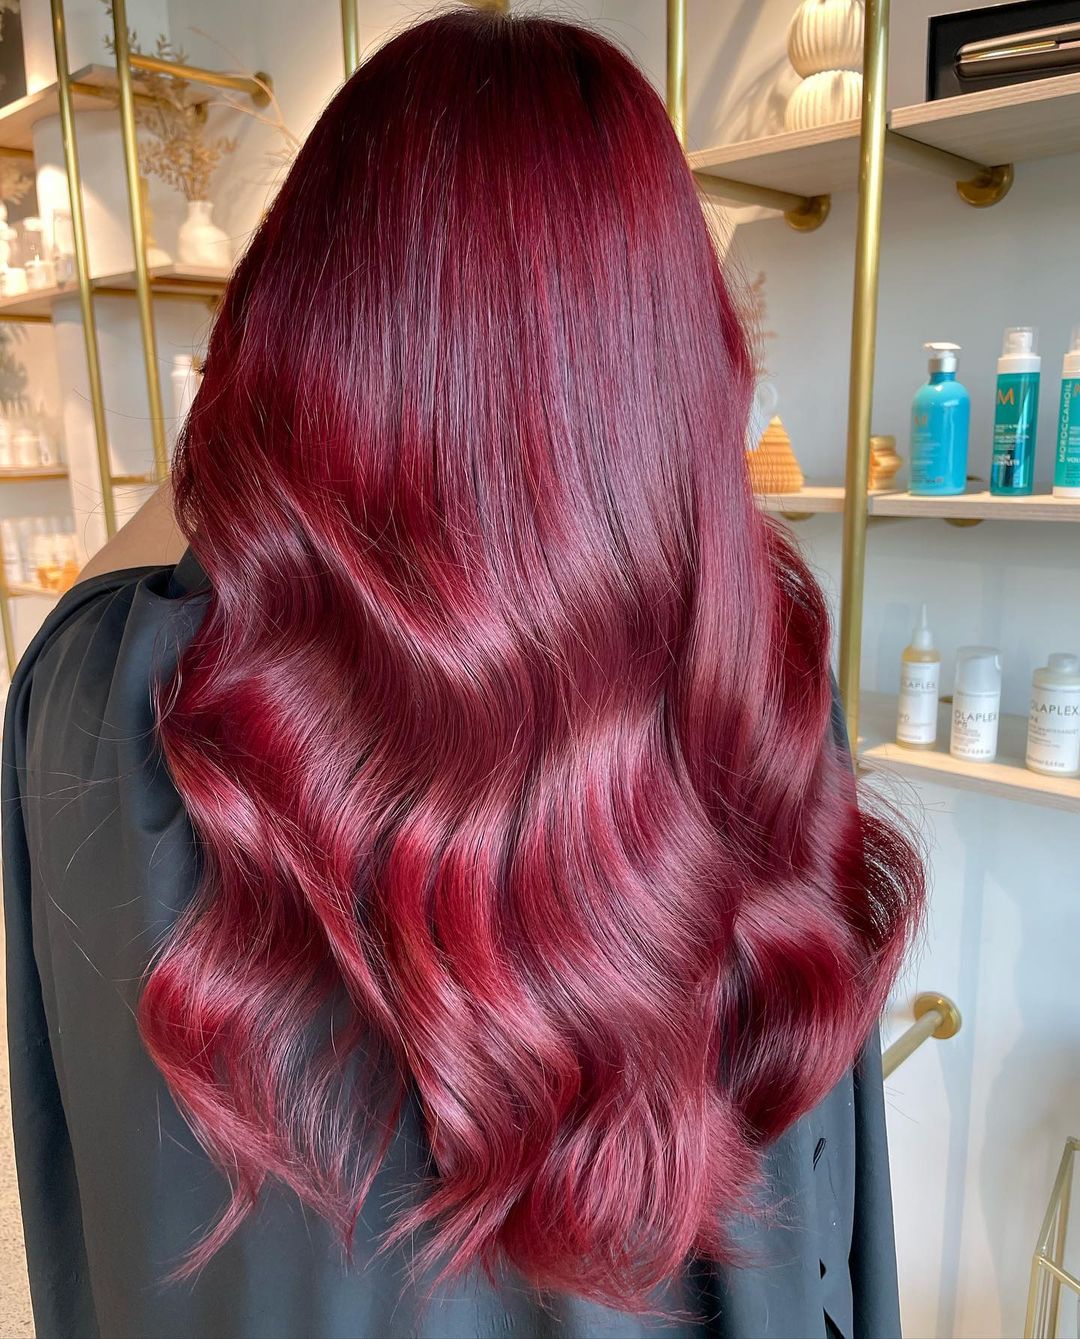 capelli lunghi e lucidi color rosso ciliegia